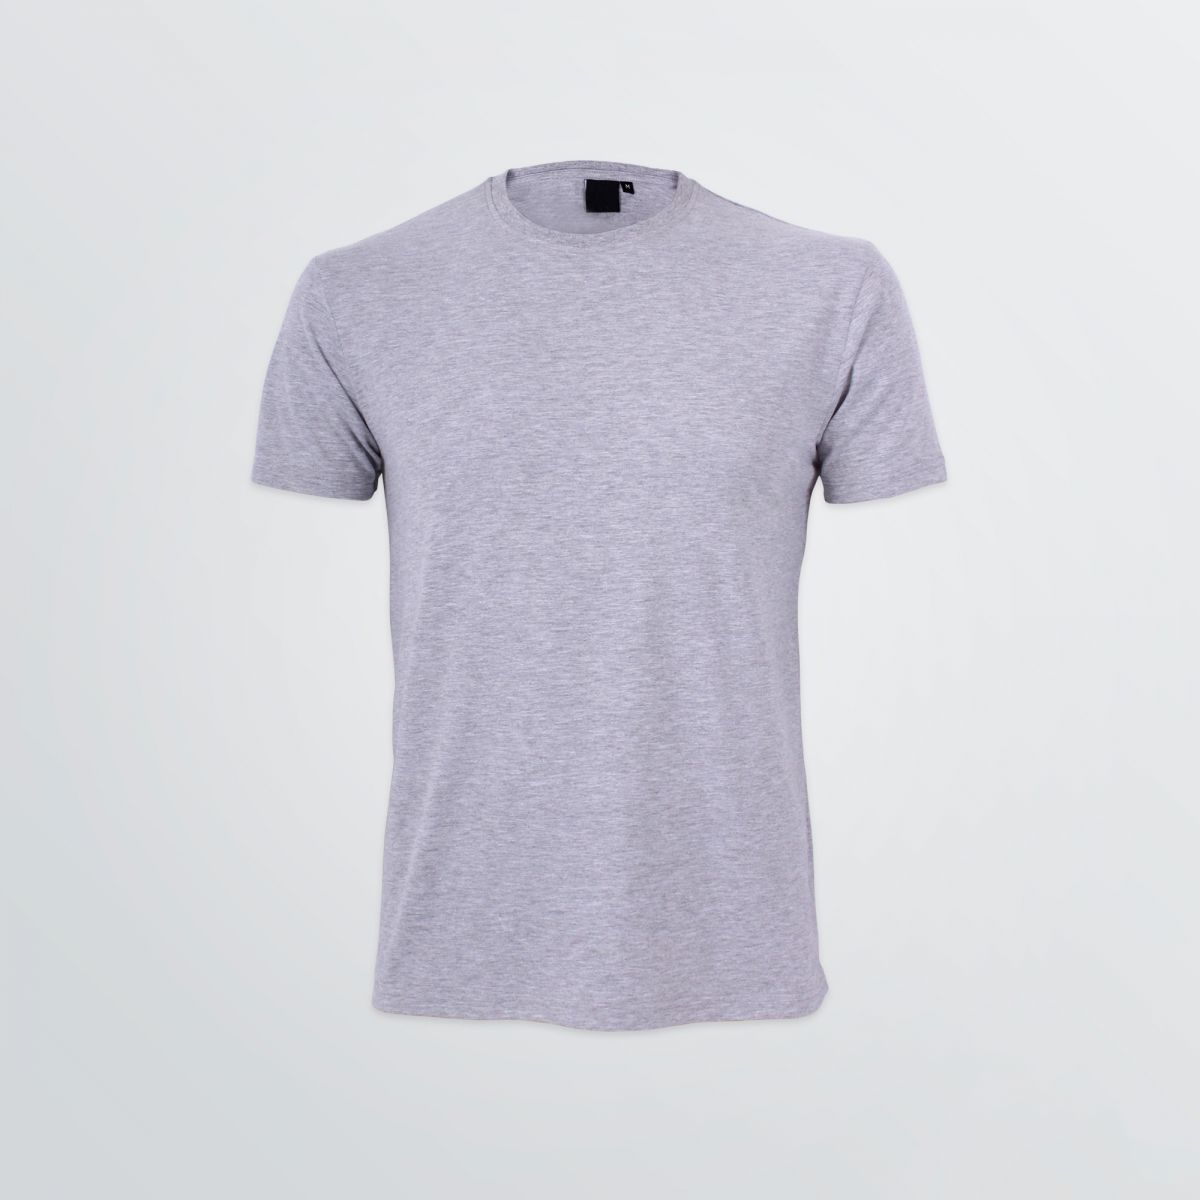 Basic Bio Cotton Shirt aus Bio-Baumwolle zum Individualisieren in grauer Beispielfarbe - Frontansicht